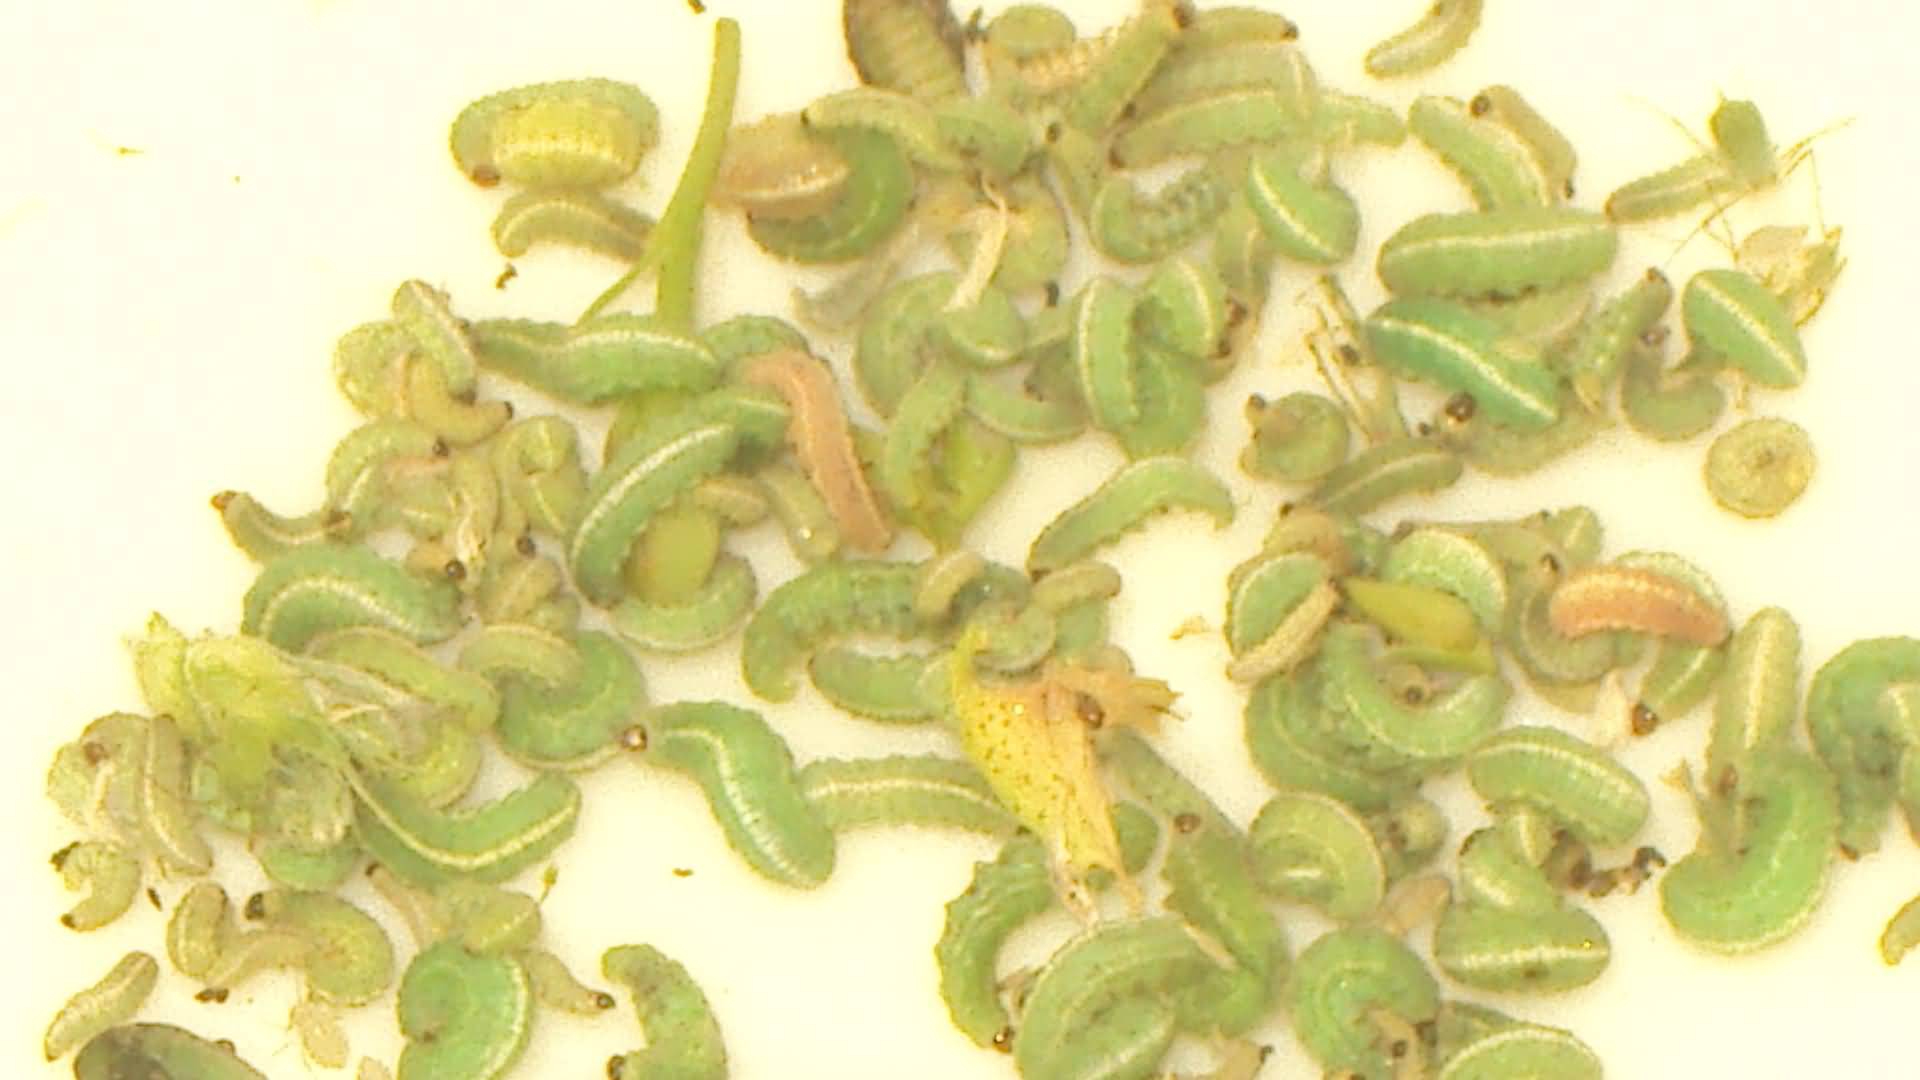 Alfalfa weevil larvae